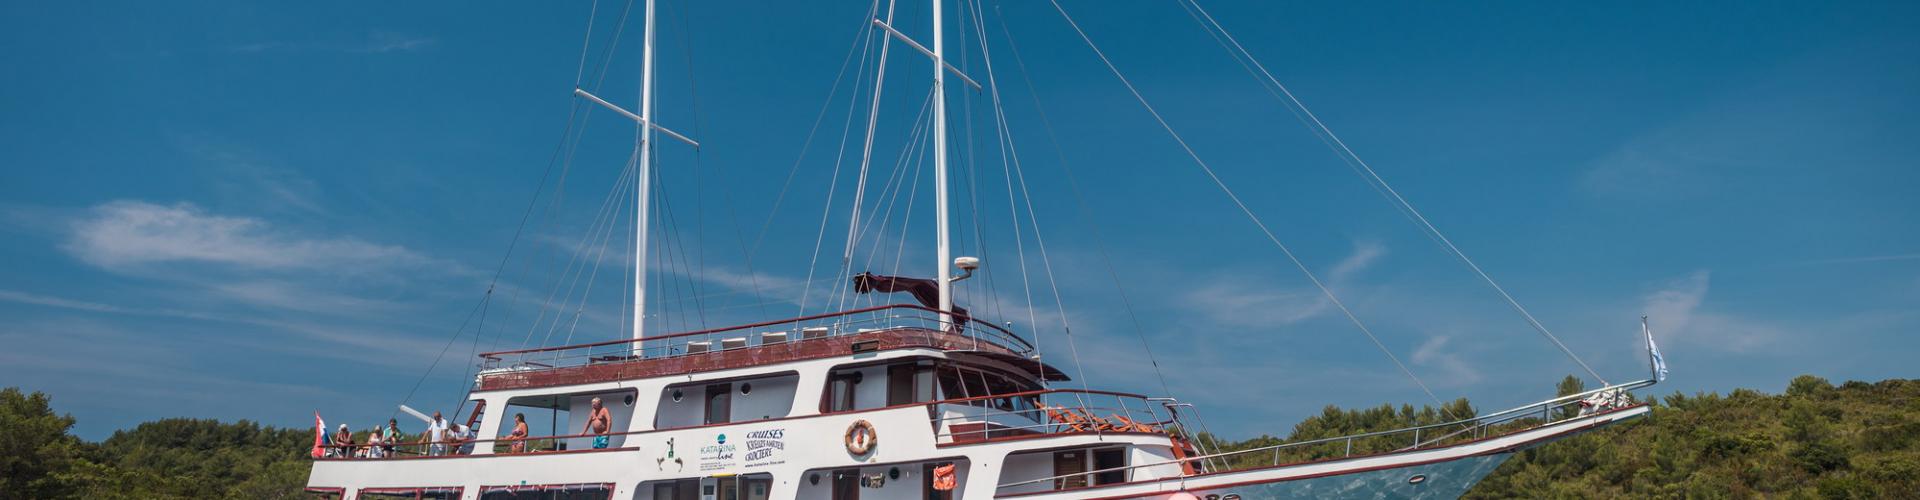 Premium navire de croisière MV Vapor- voilier à moteur